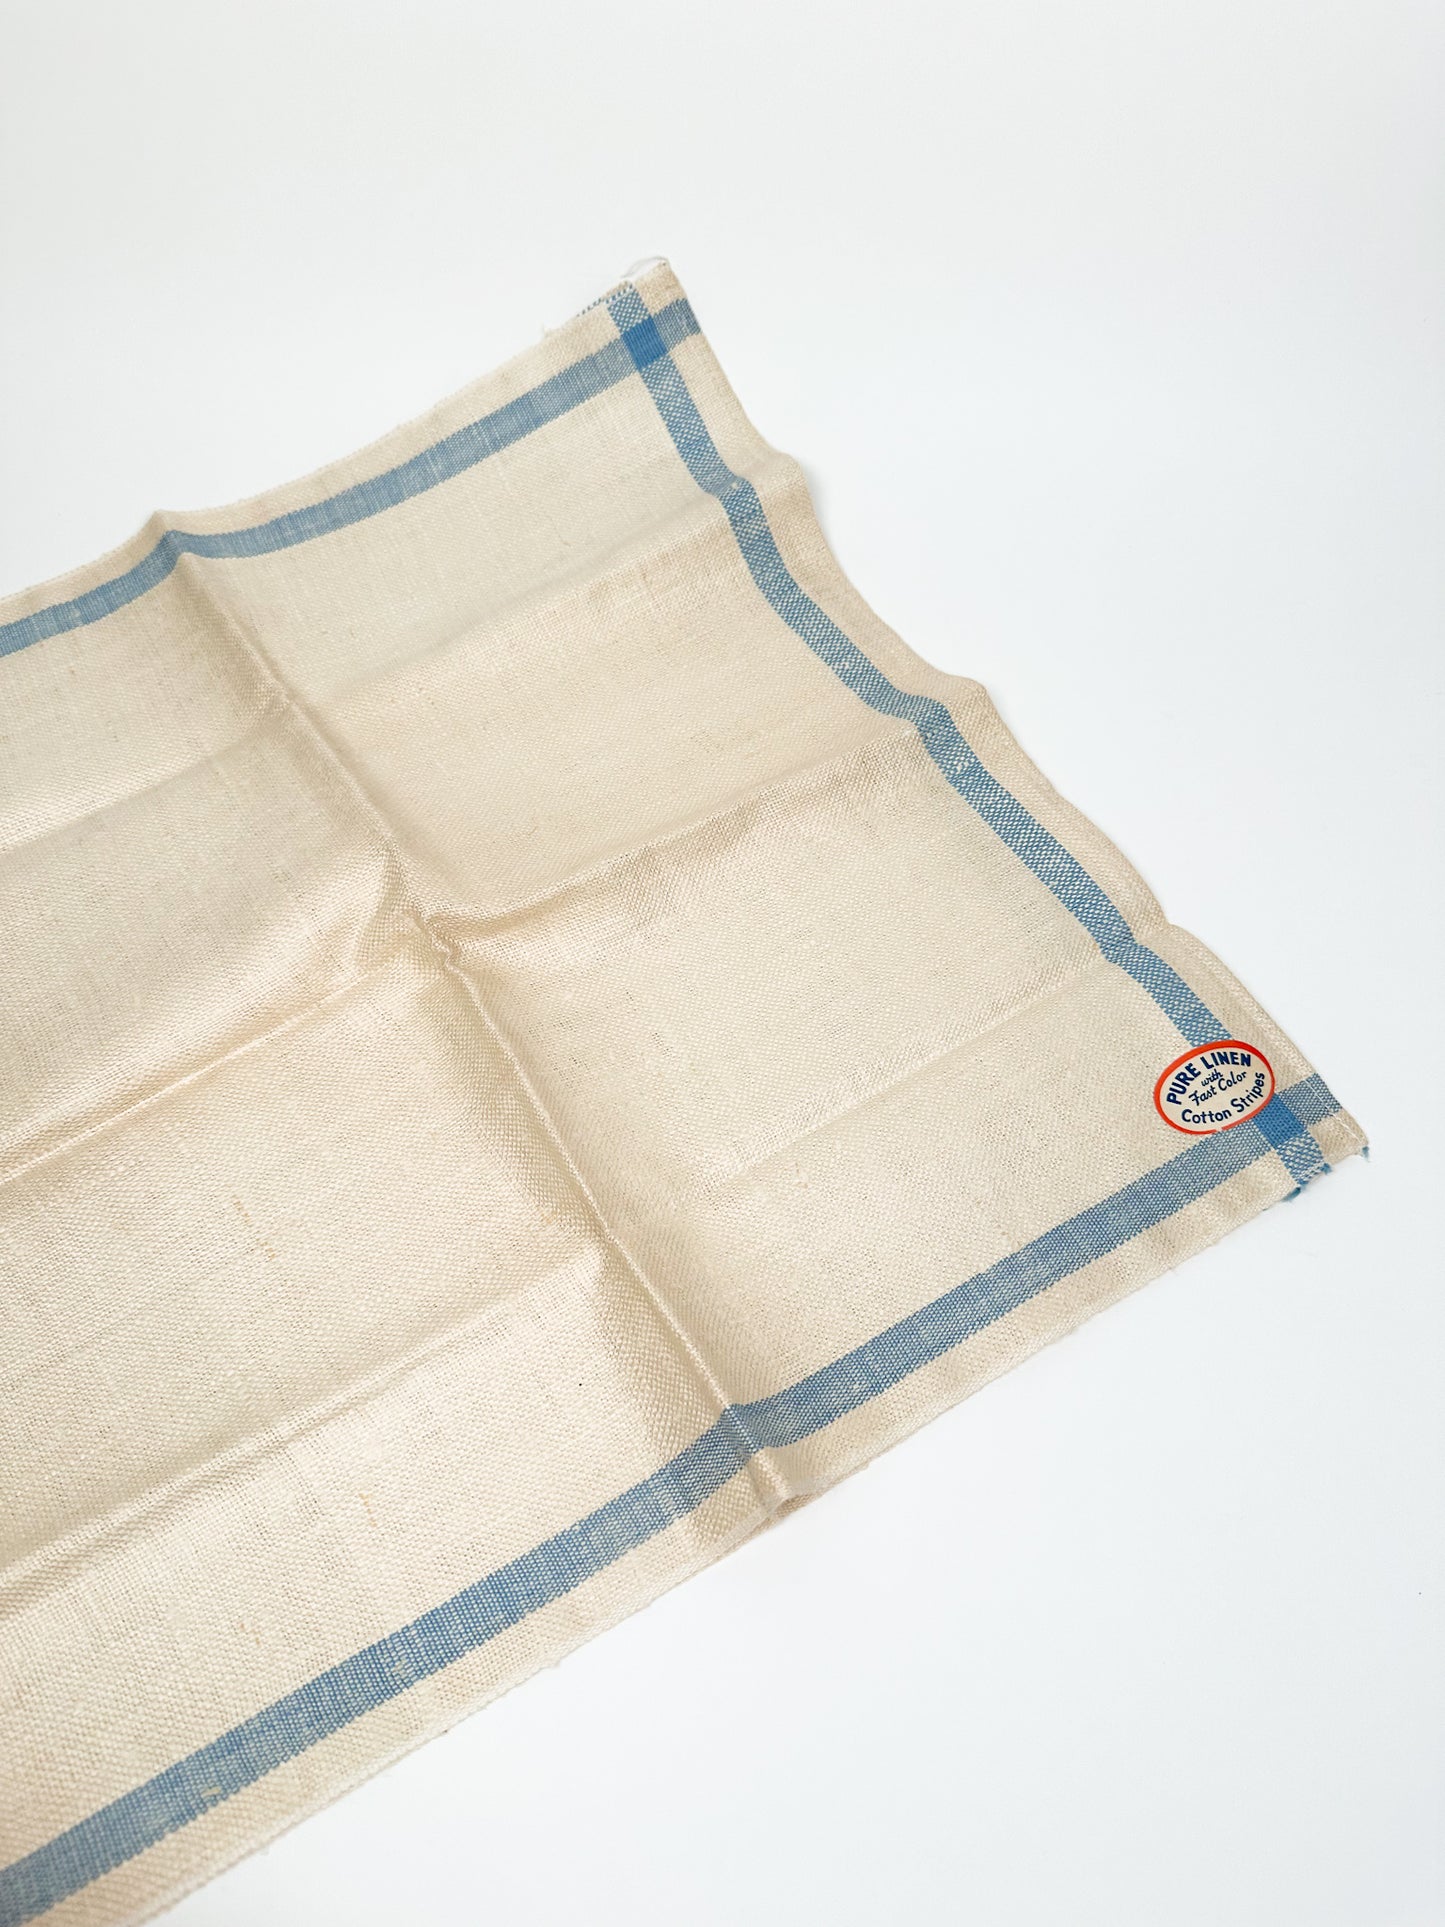 Vintage Linen Napkins